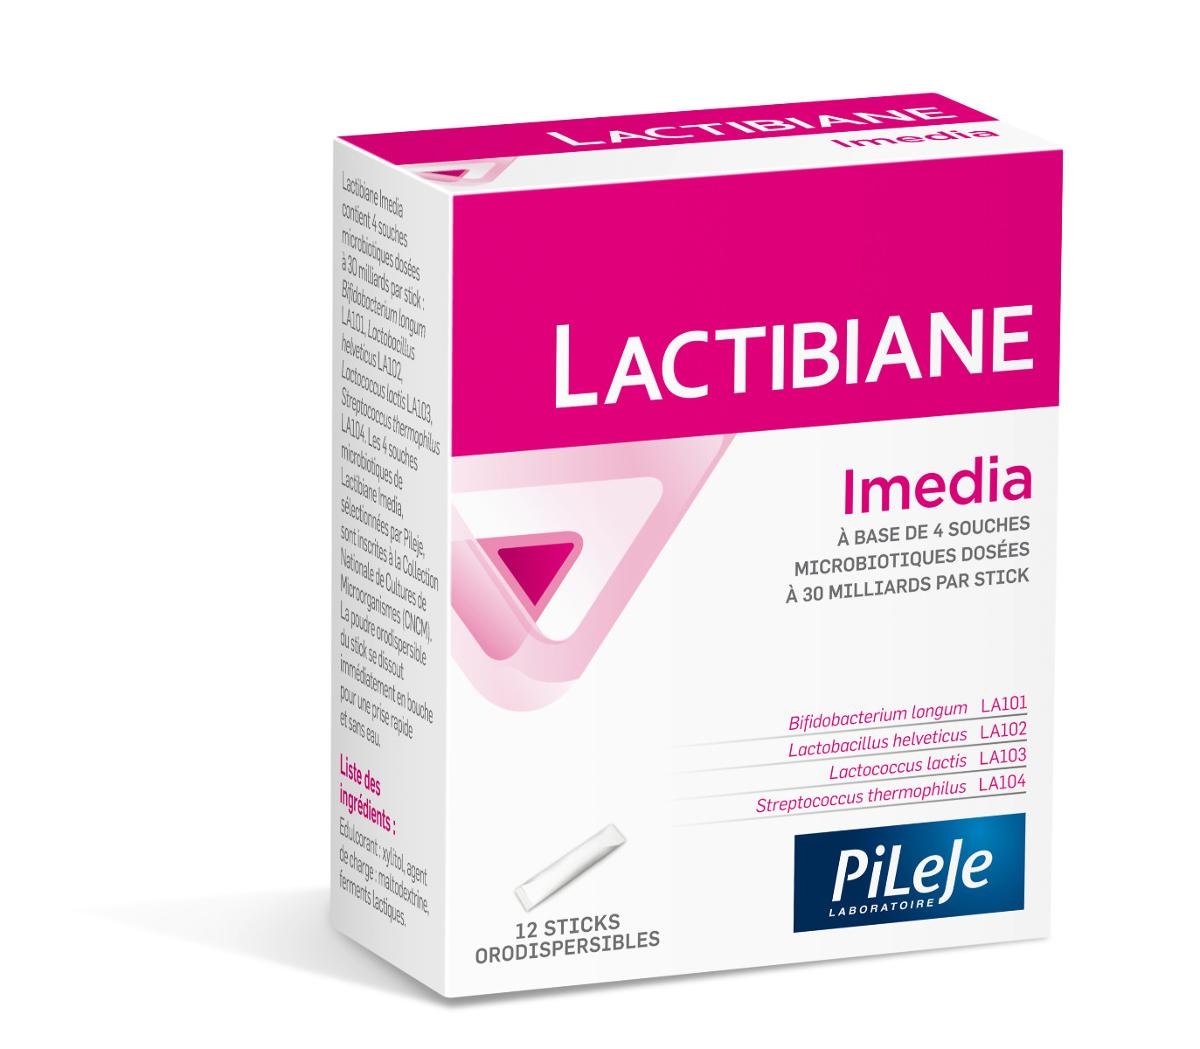 PiLeJe Lactibiane Imedia (Probiotyk, Przeciw infekcjami żołądkowo-jelitowymi) 12 Saszetek